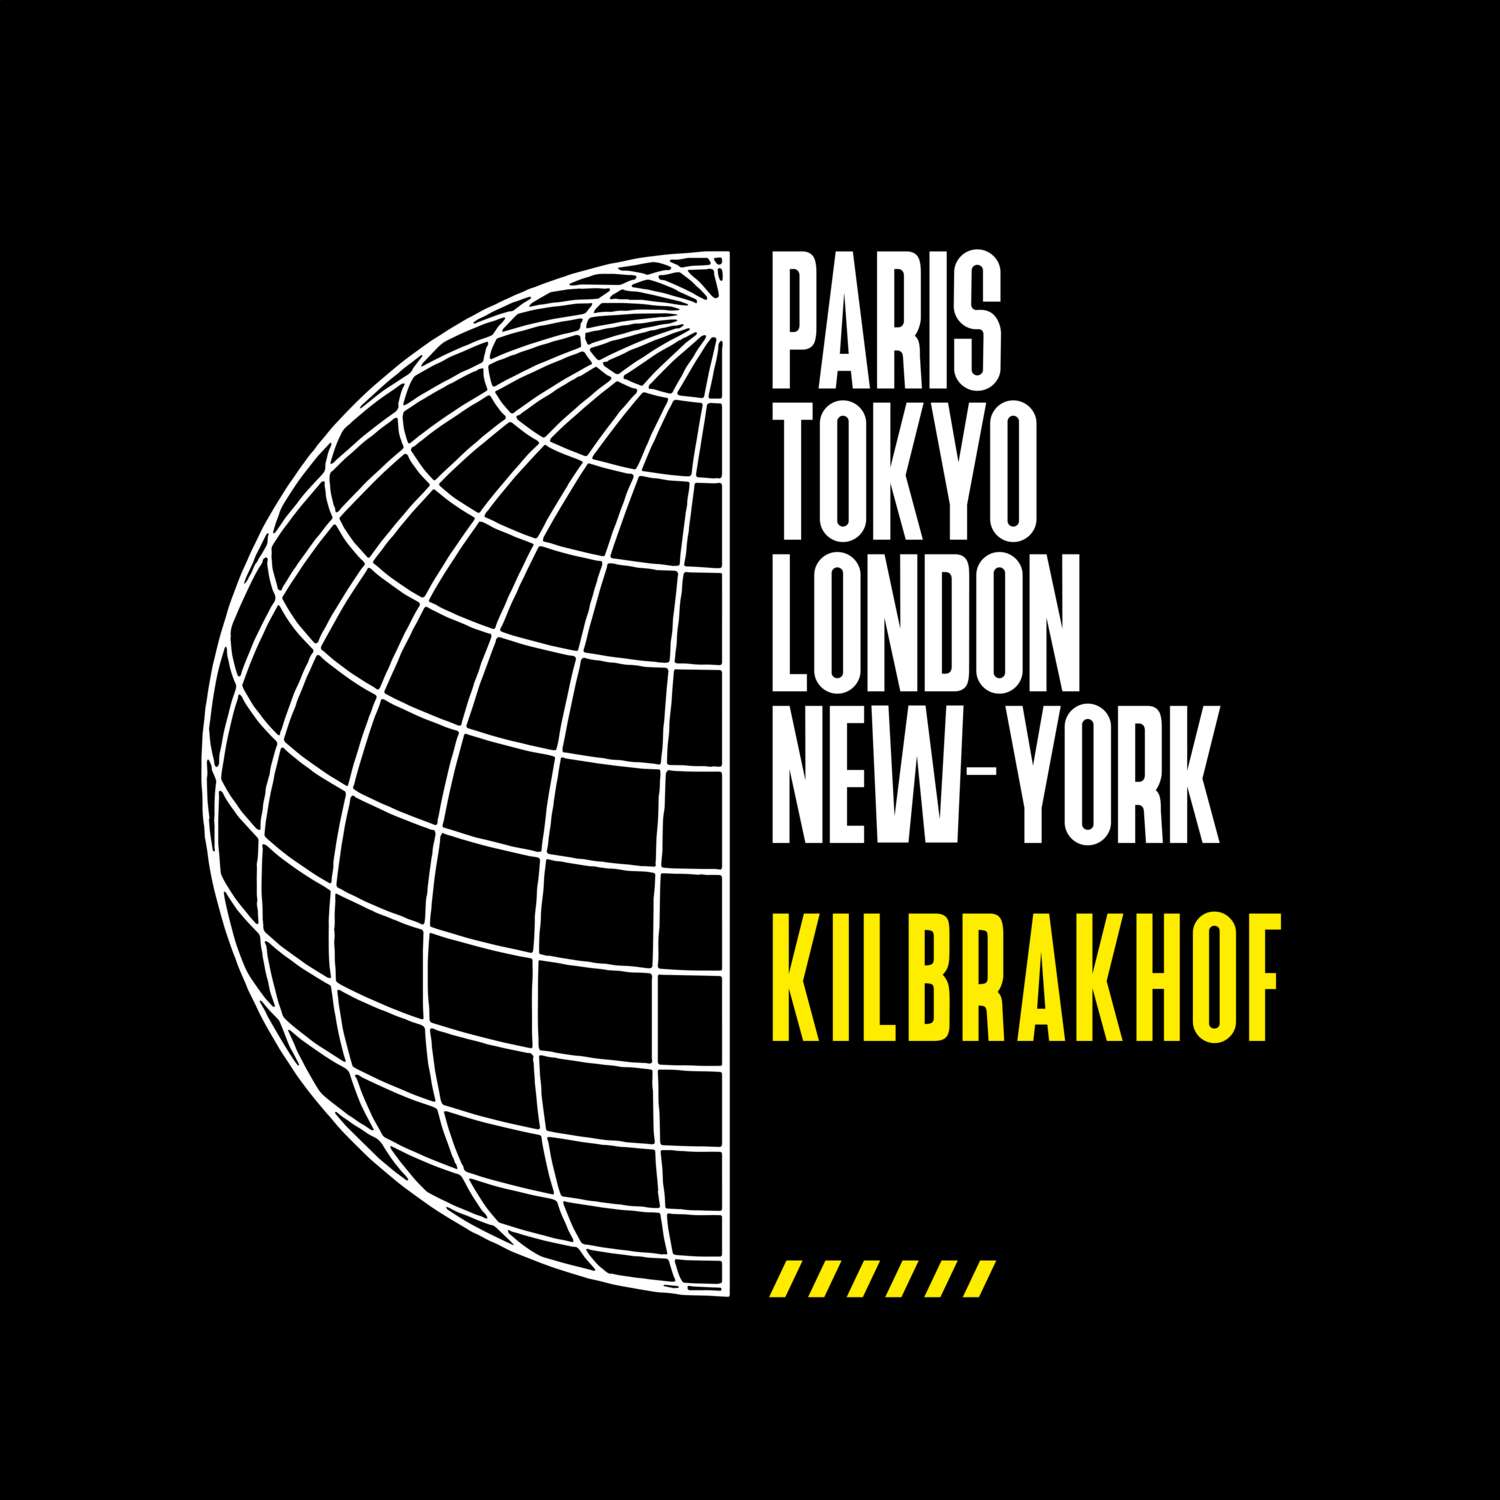 Kilbrakhof T-Shirt »Paris Tokyo London«